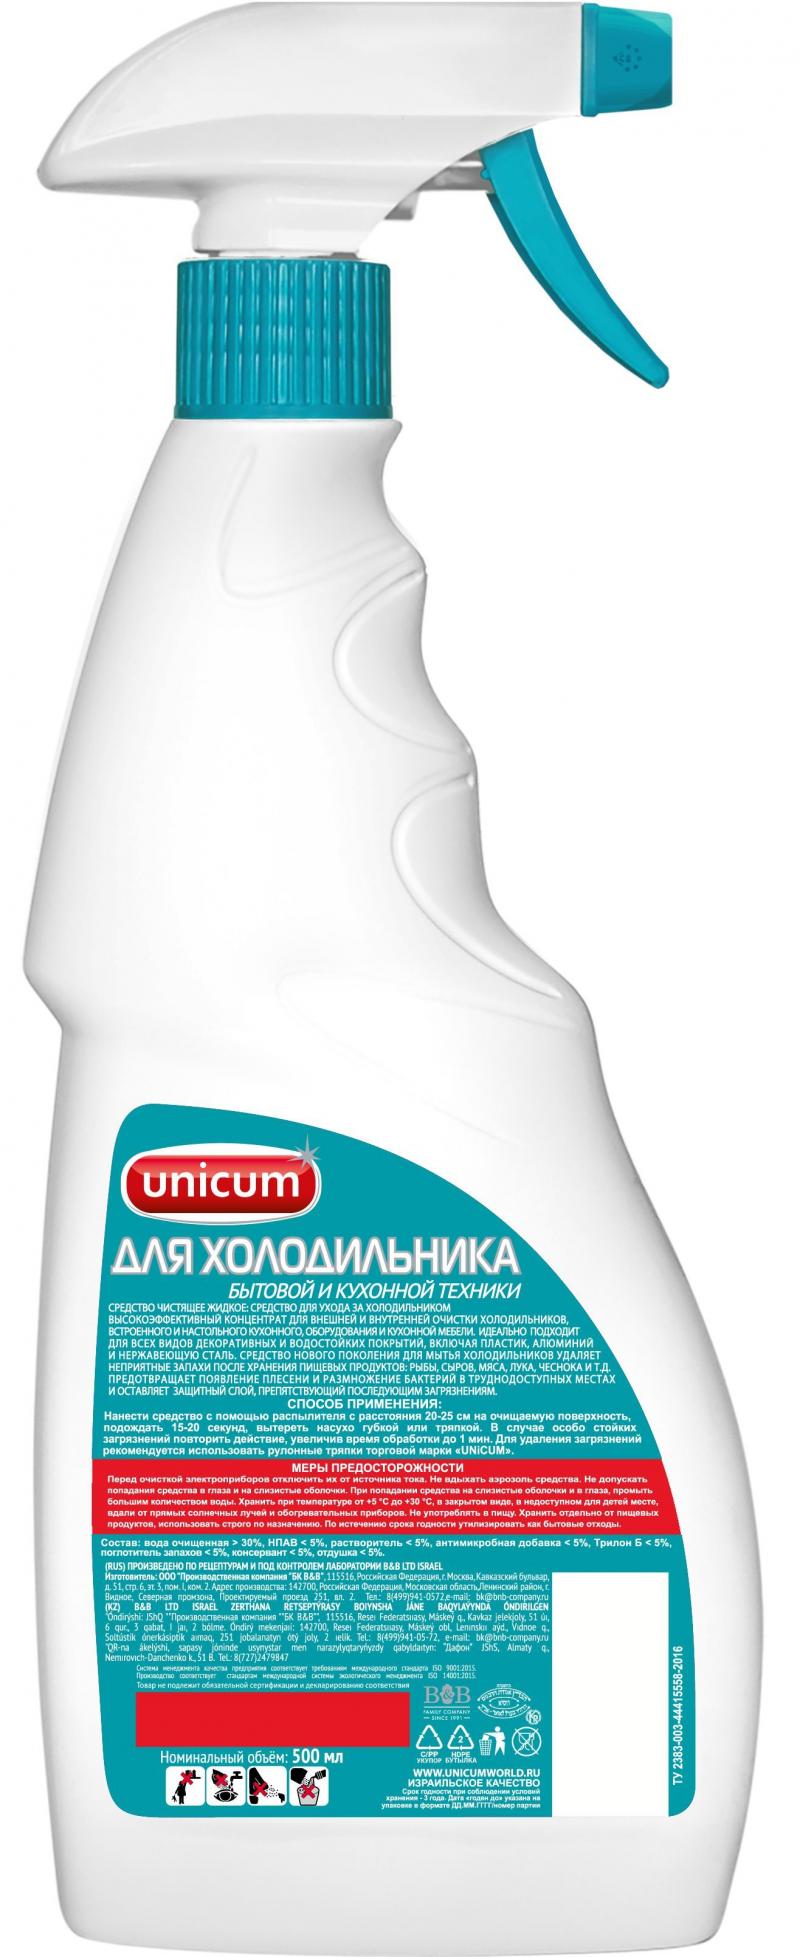 Средство для ухода за холодильником Unicum 0.5 л